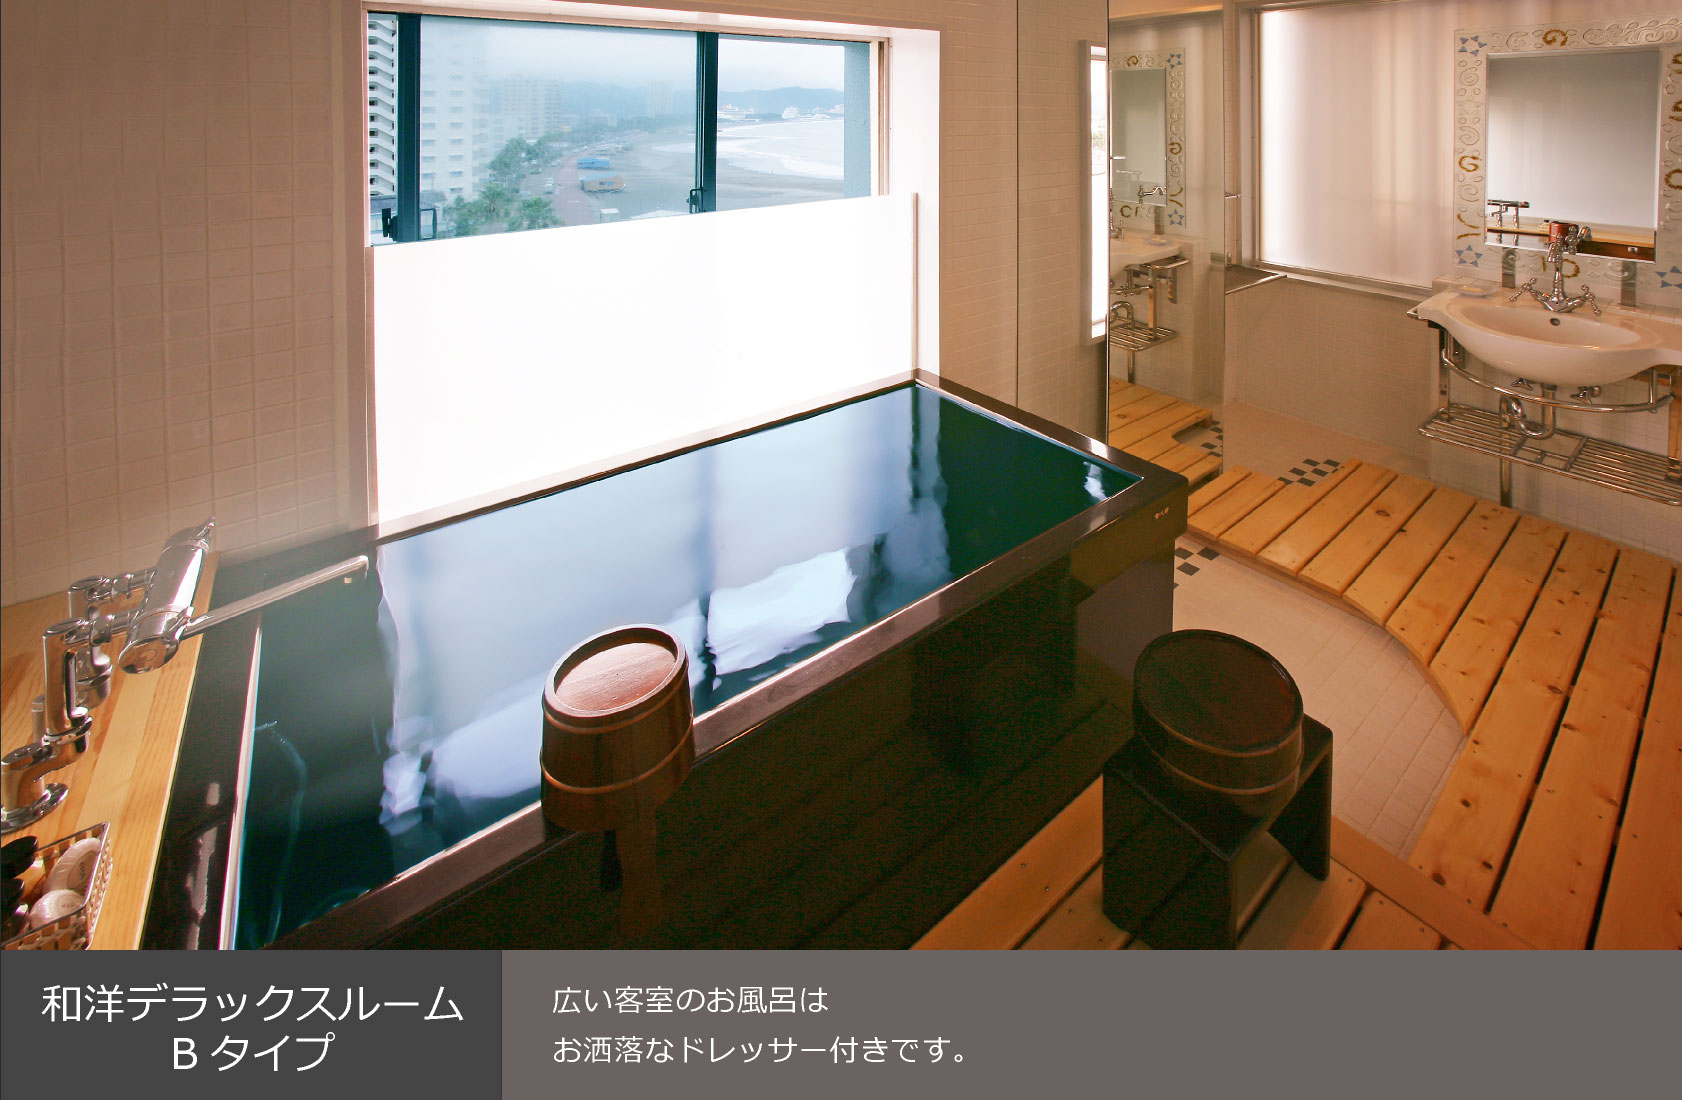 和洋デラックスルーム Bタイプ 広い客室のお風呂はお洒落なドレッサー付きです。